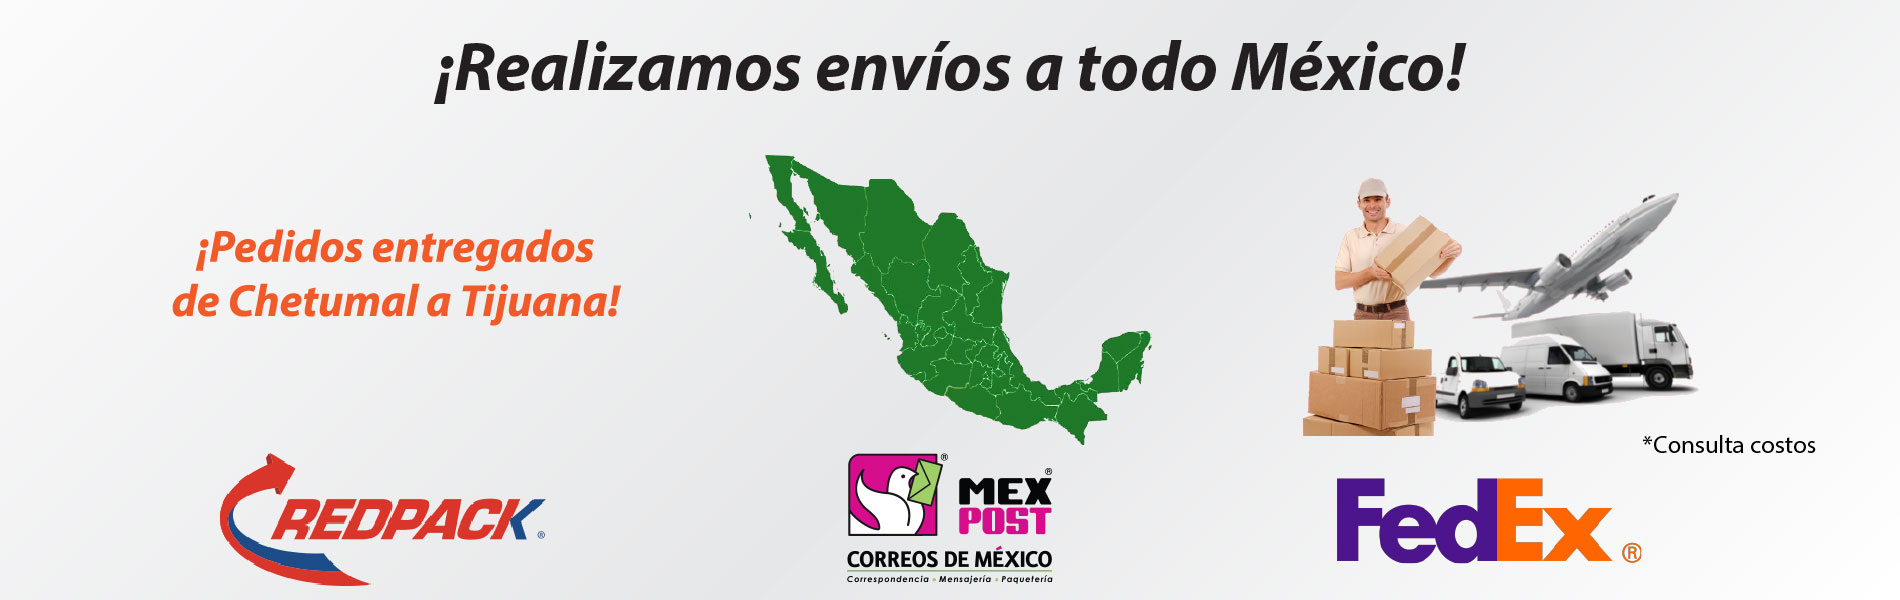 Banner de Envío a todo México realizado por Carcoms.com.mx